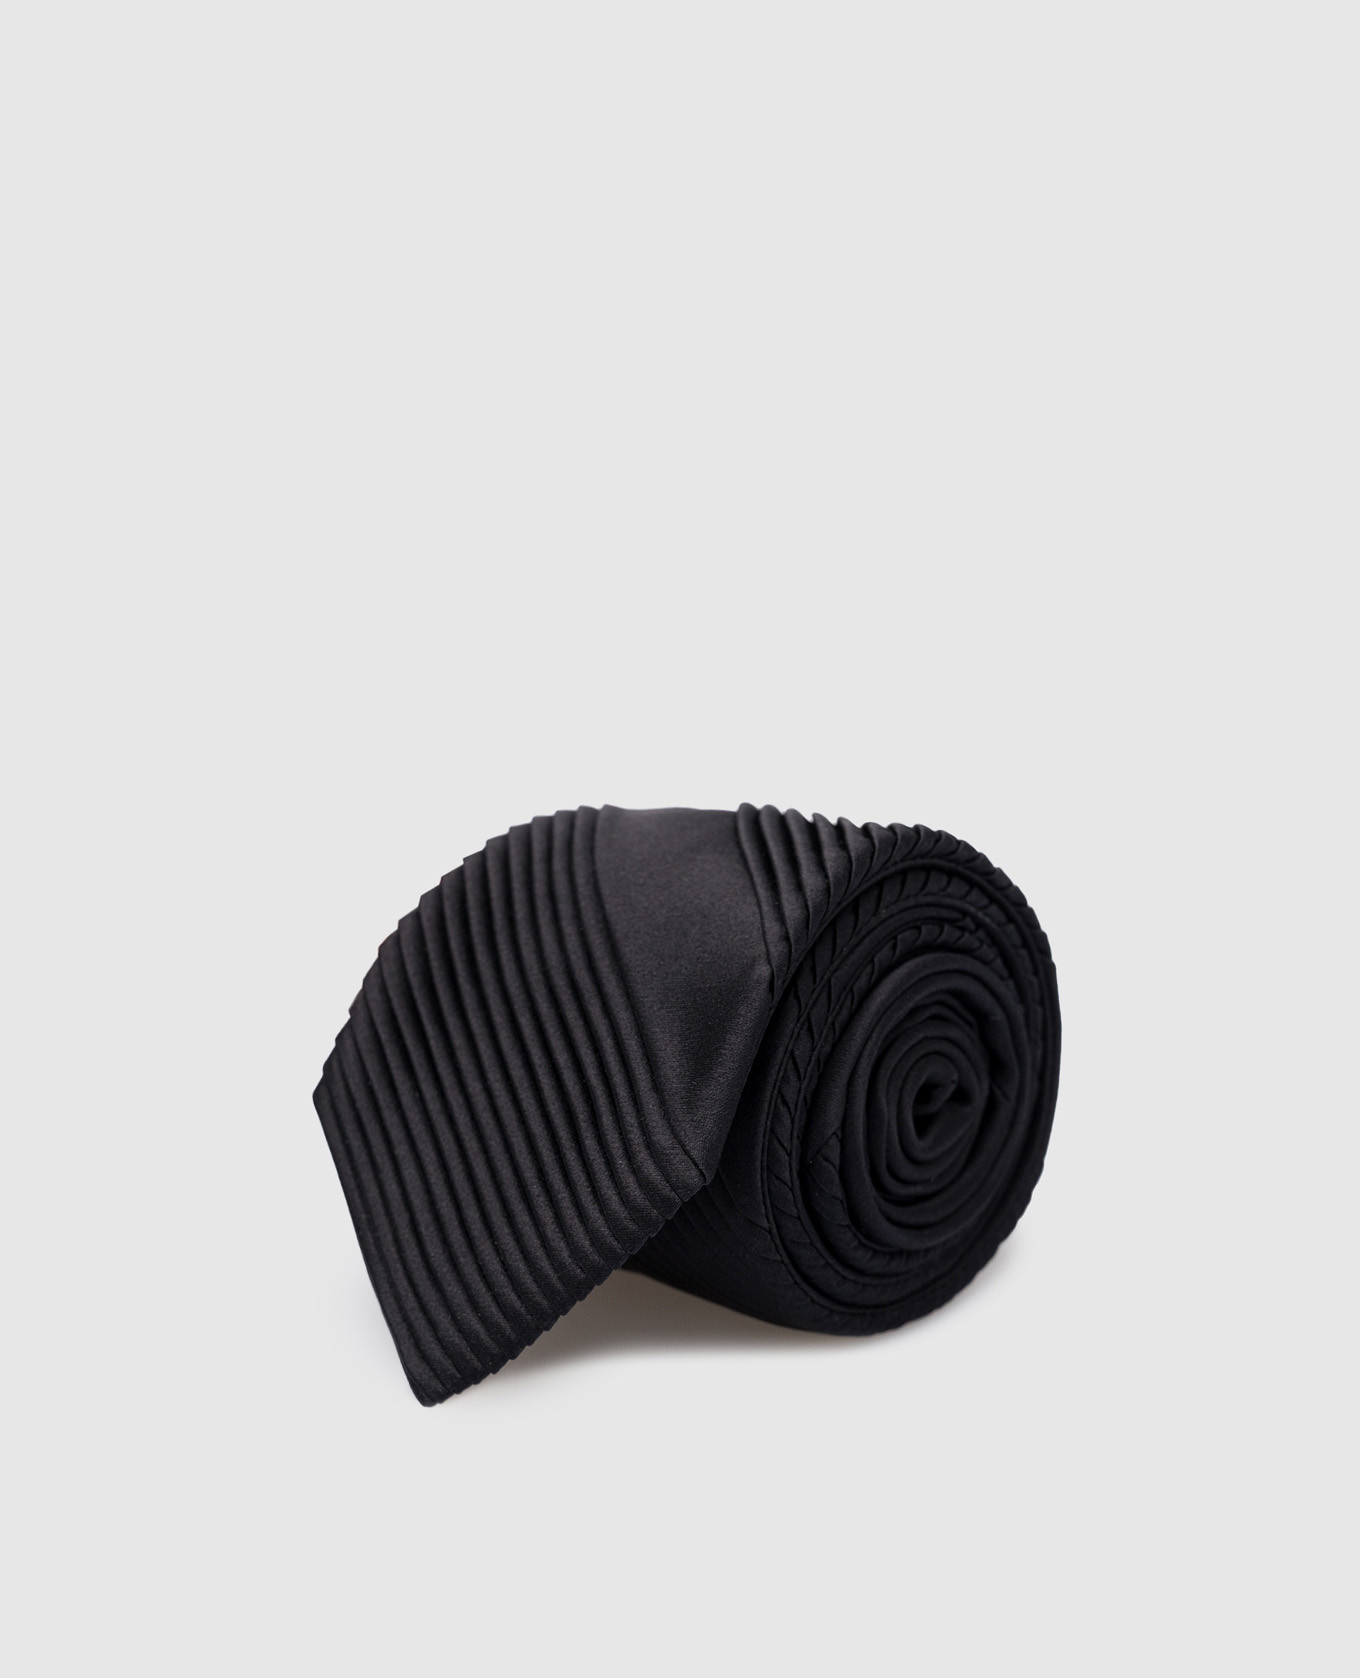 Children's black tie made of silk